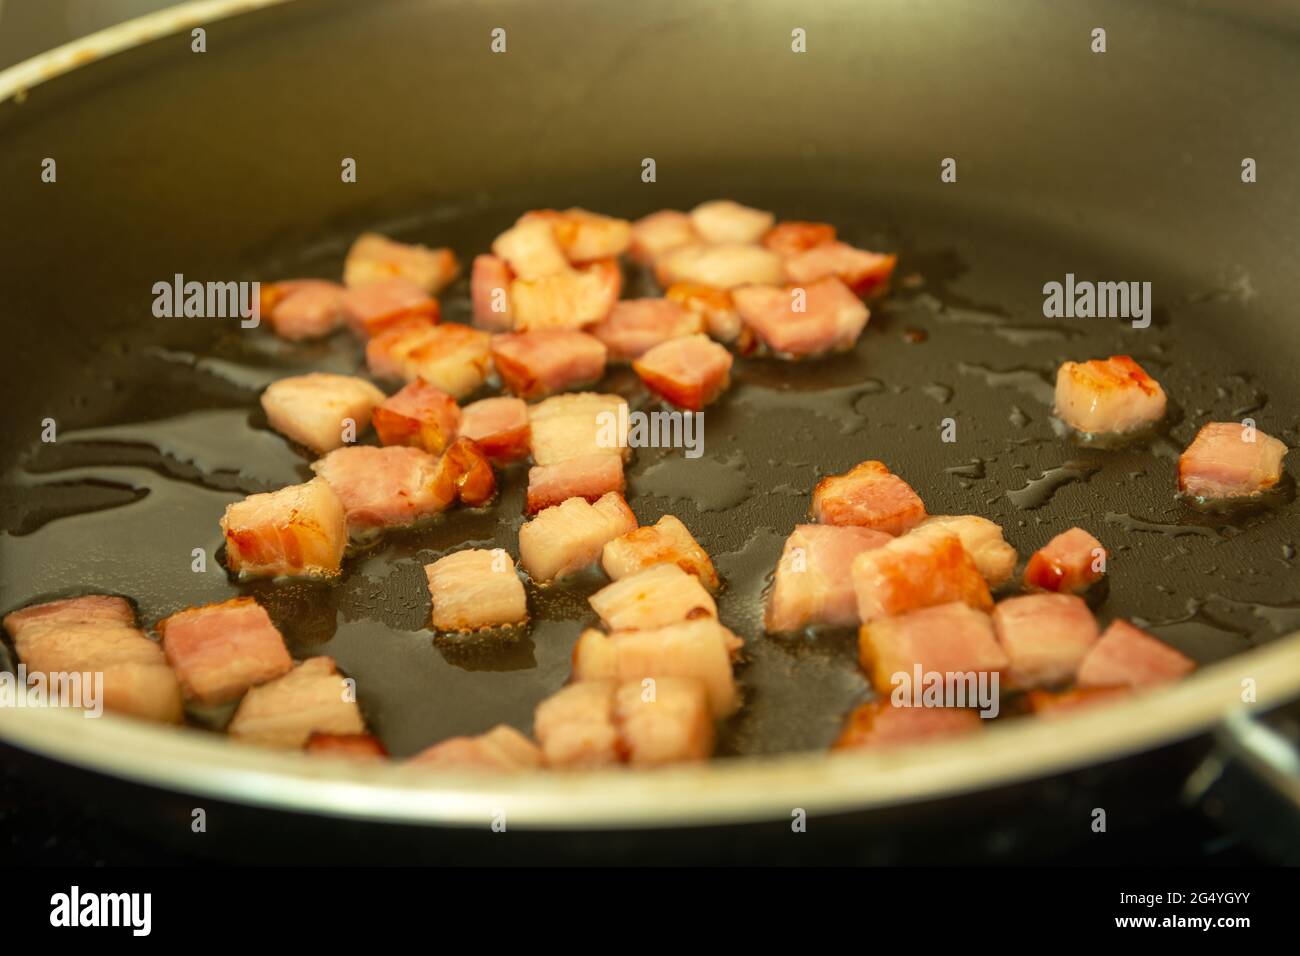 Bacon frais frits dans de l'huile dans une casserole Banque D'Images